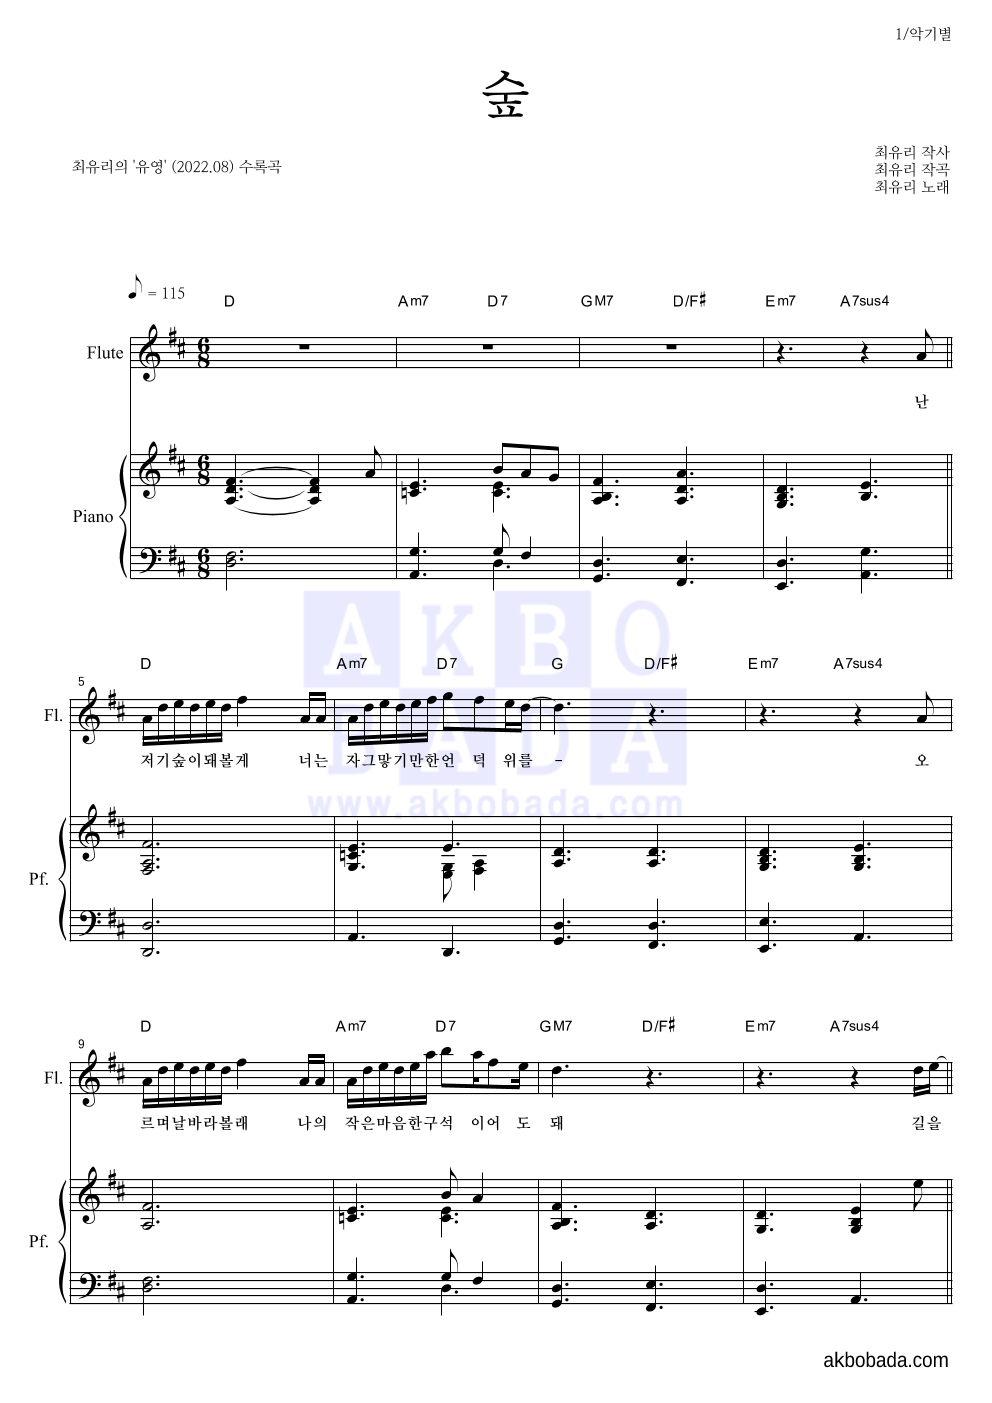 최유리 - 숲 플룻&피아노 악보 